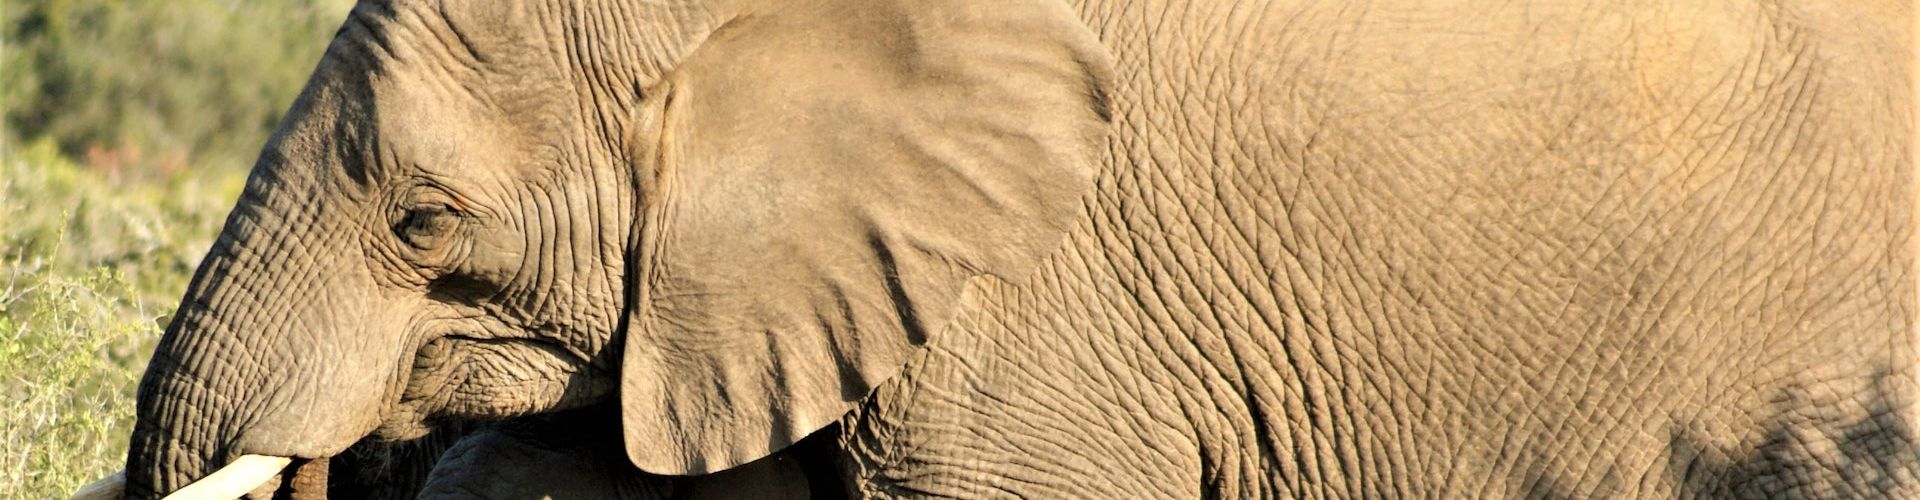 Primer plano de un paquidermo africano (elefante)